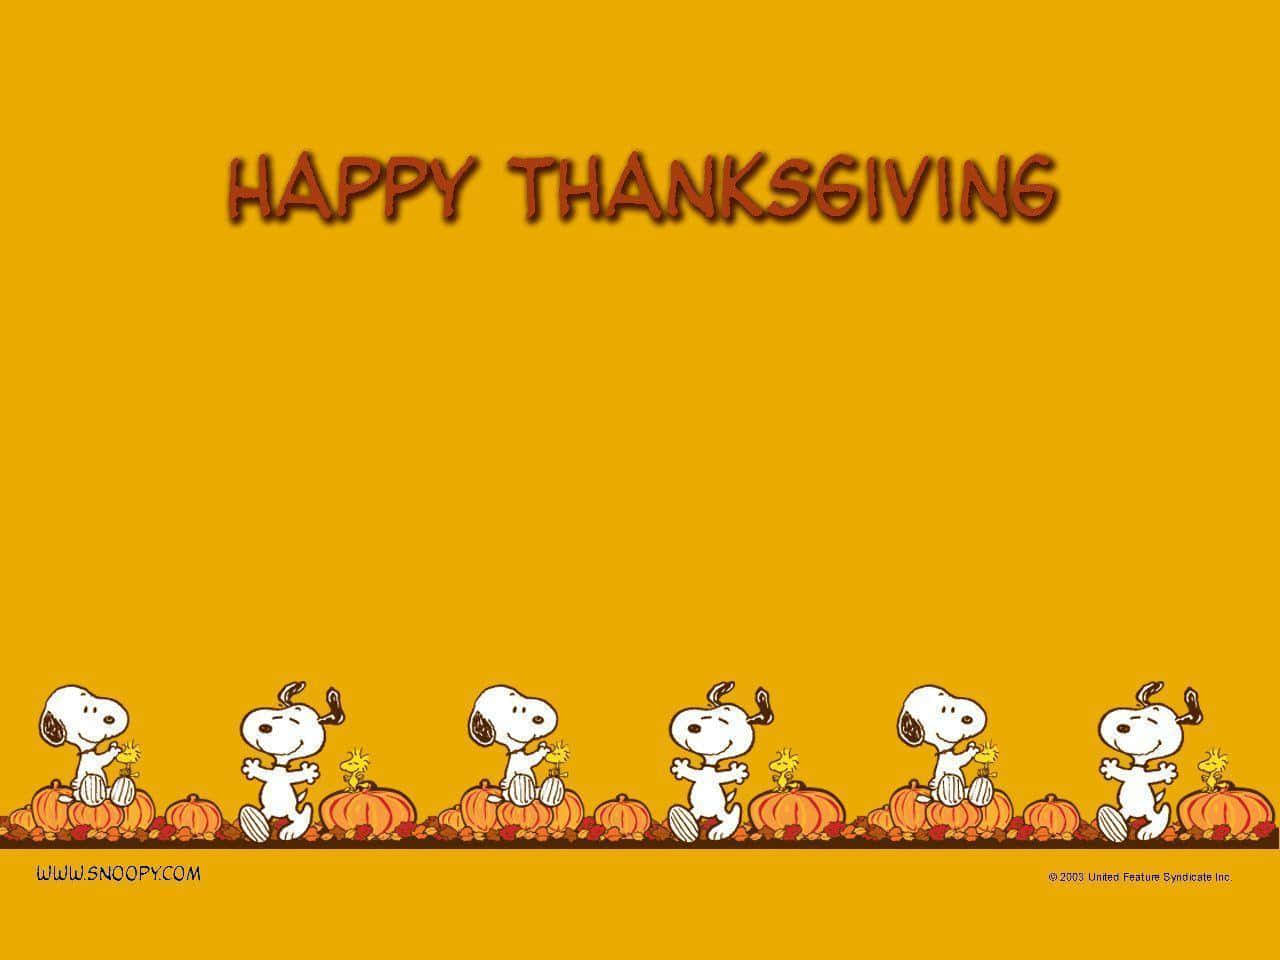 Celebreo Dia De Ação De Graças Com O Snoopy! Papel de Parede